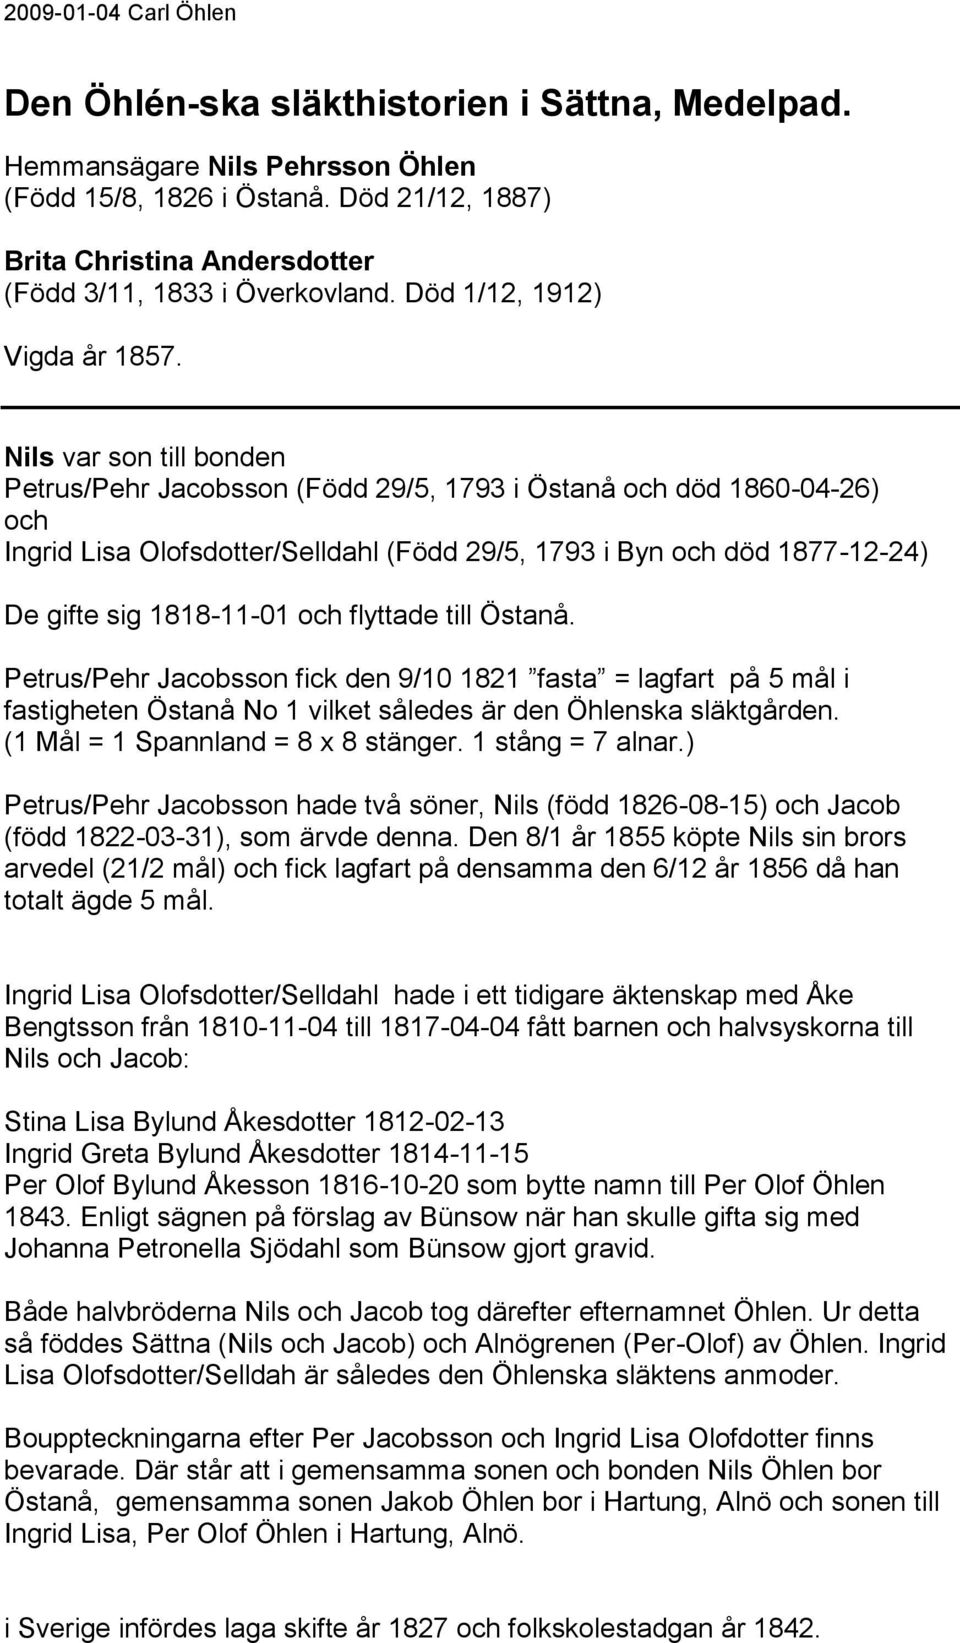 Nils var son till bonden Petrus/Pehr Jacobsson (Född 29/5, 1793 i Östanå död 1860-04-26) Ingrid Lisa Olofsdotter/Selldahl (Född 29/5, 1793 i Byn död 1877-12-24) De gifte sig 1818-11-01 flyttade till